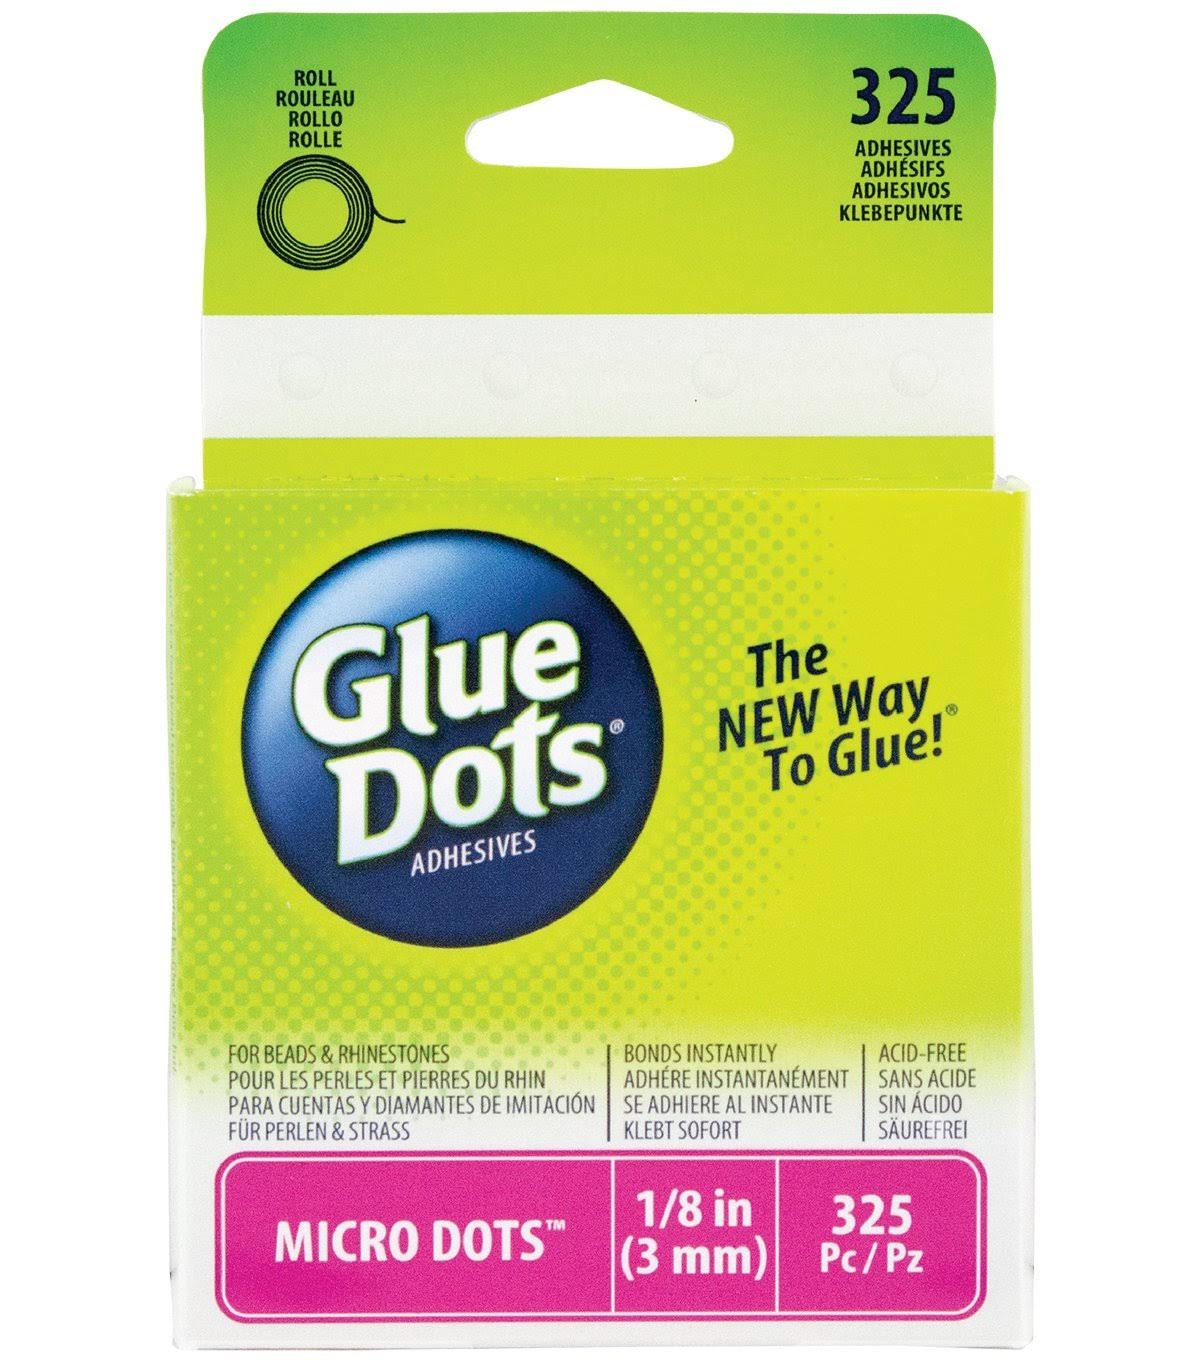 Glue Dots Adhesive Micro Dots - 325 Adhesives